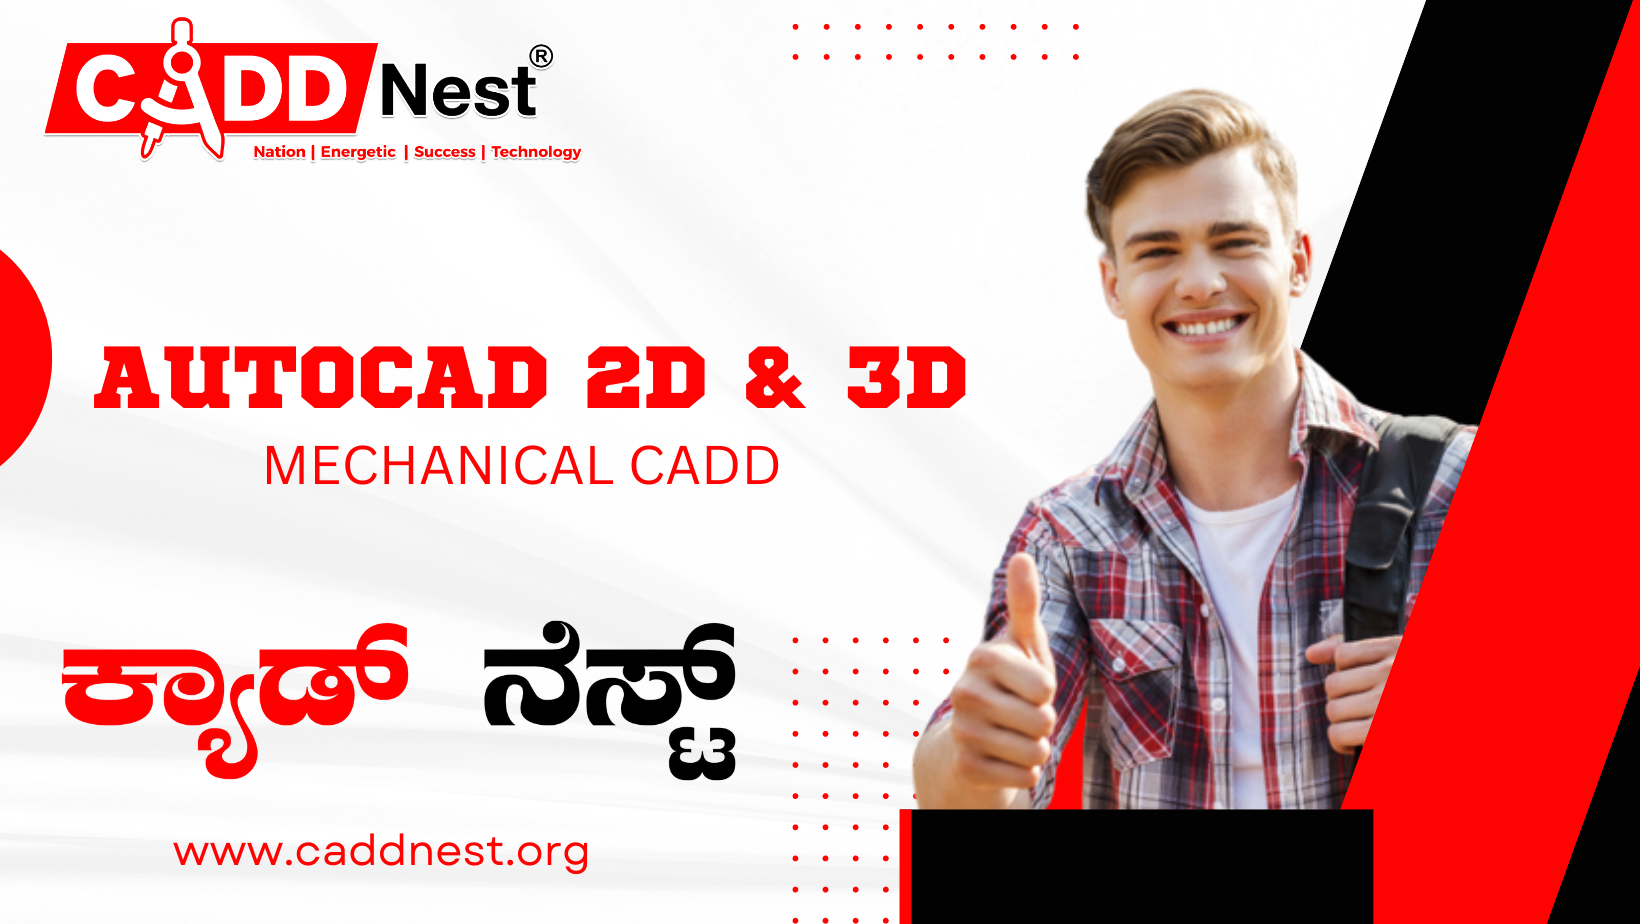 CADD NEST (P) Ltd., - AutoCAD 2D & 3D (Mechanical CADD)